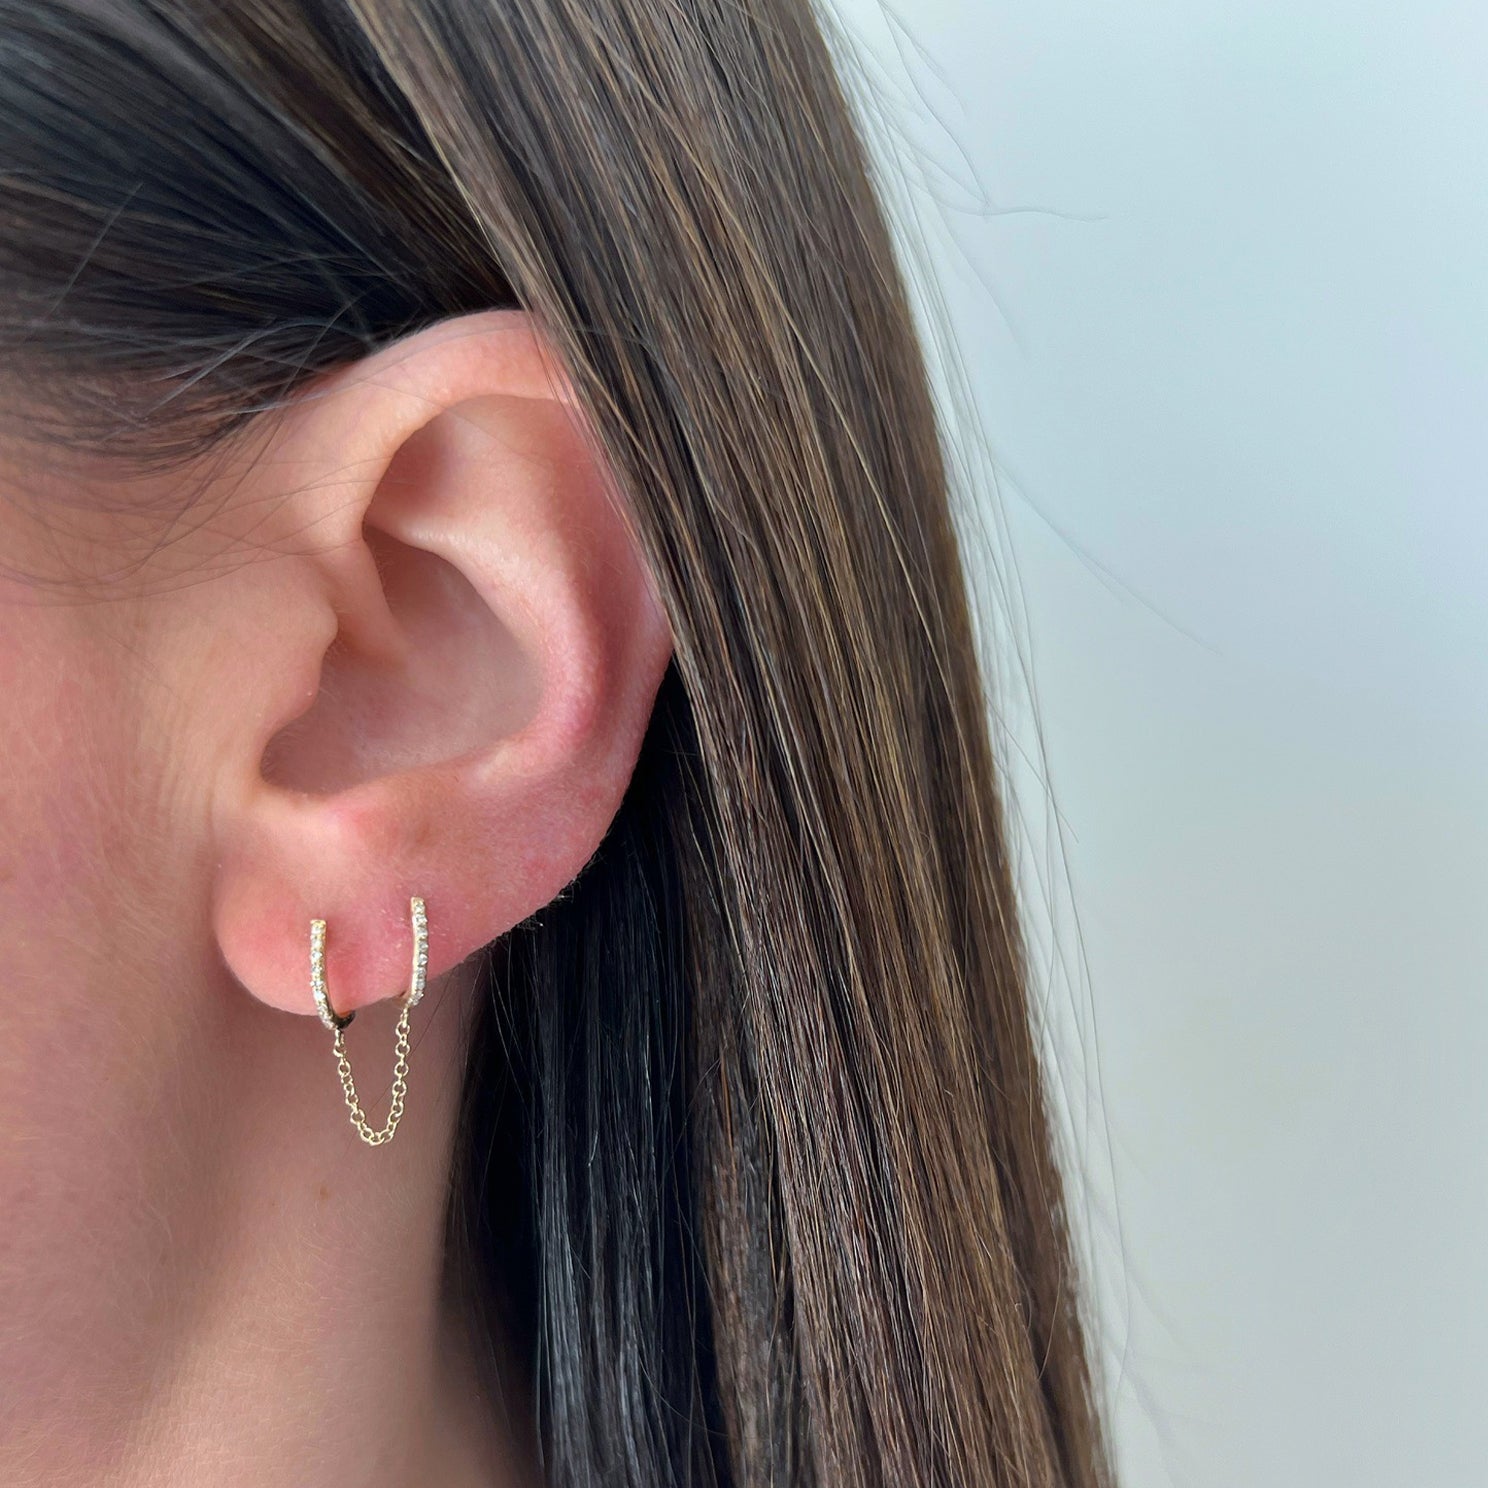 Gold Huggie Hoops Double Hoop Earrings Edgy Earrings Chain Earrings Dangle  Earrings Drop Chain Earrings Minimalist Earrings 82 - Etsy | Minimalist  earrings, Flower earrings studs, Prom jewelry earrings